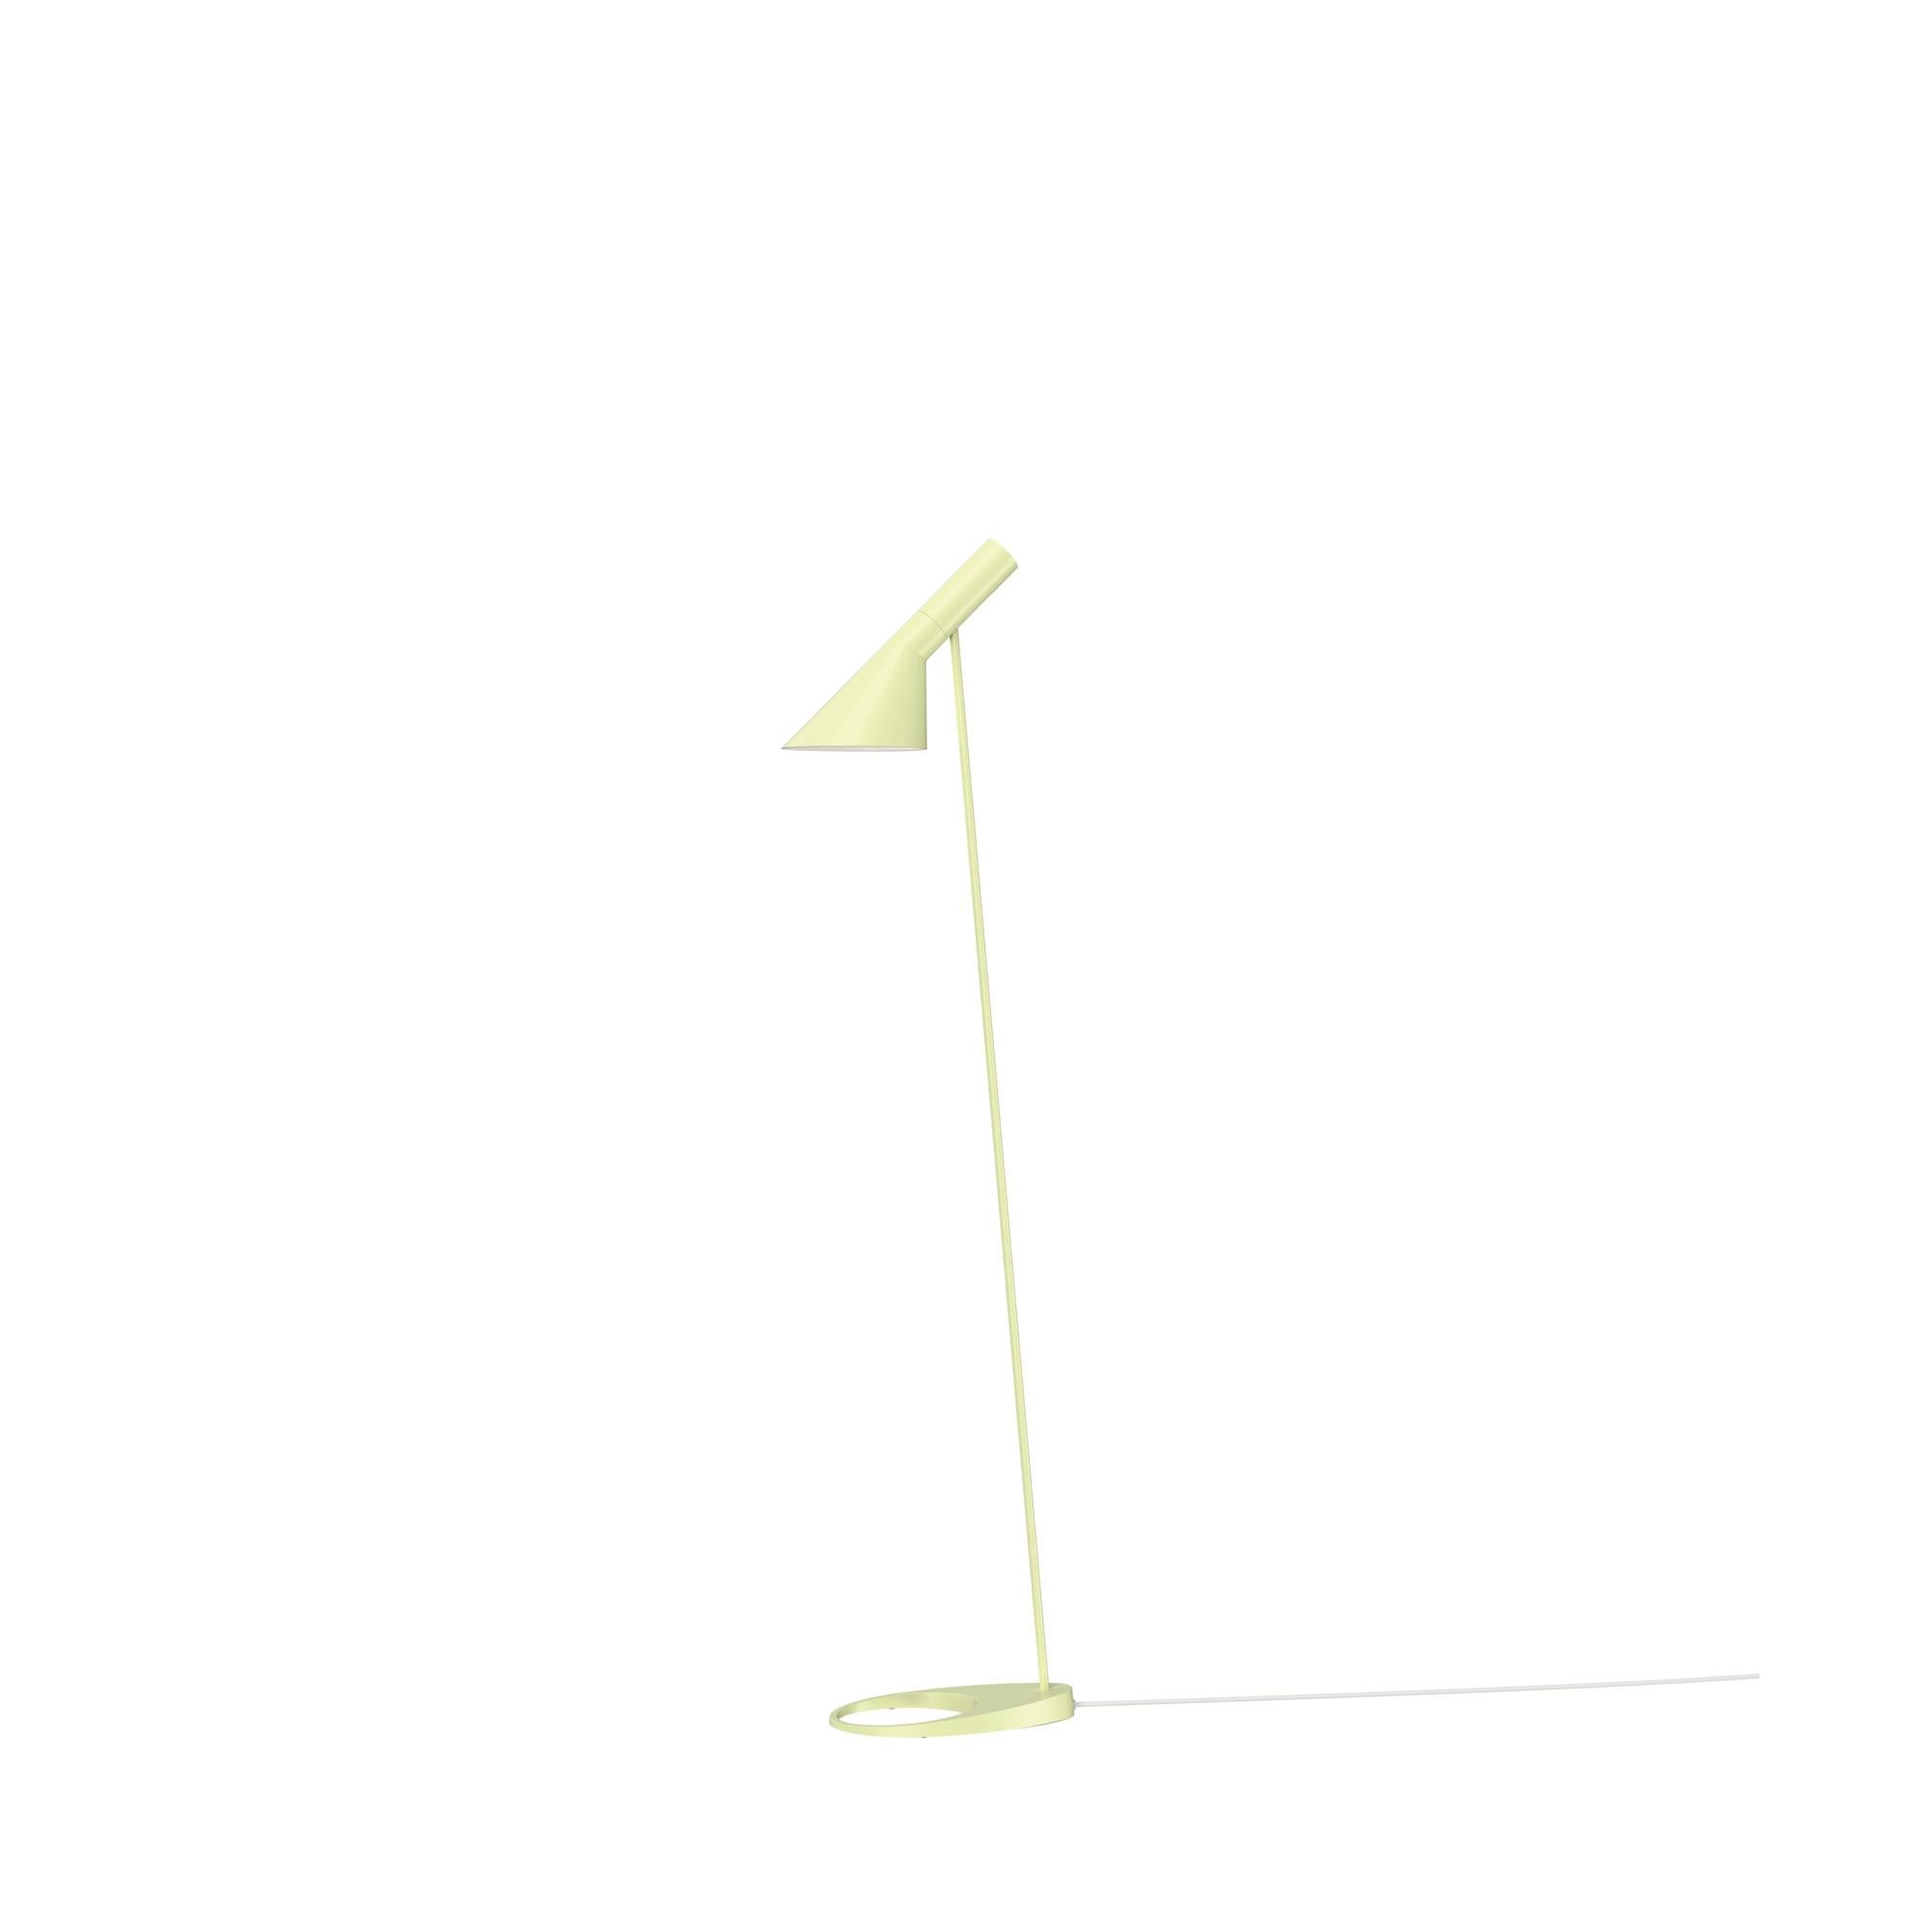 Arne Jacobsen AJ Floor Lamp in Stainless Steel for Louis Poulsen For Sale 9